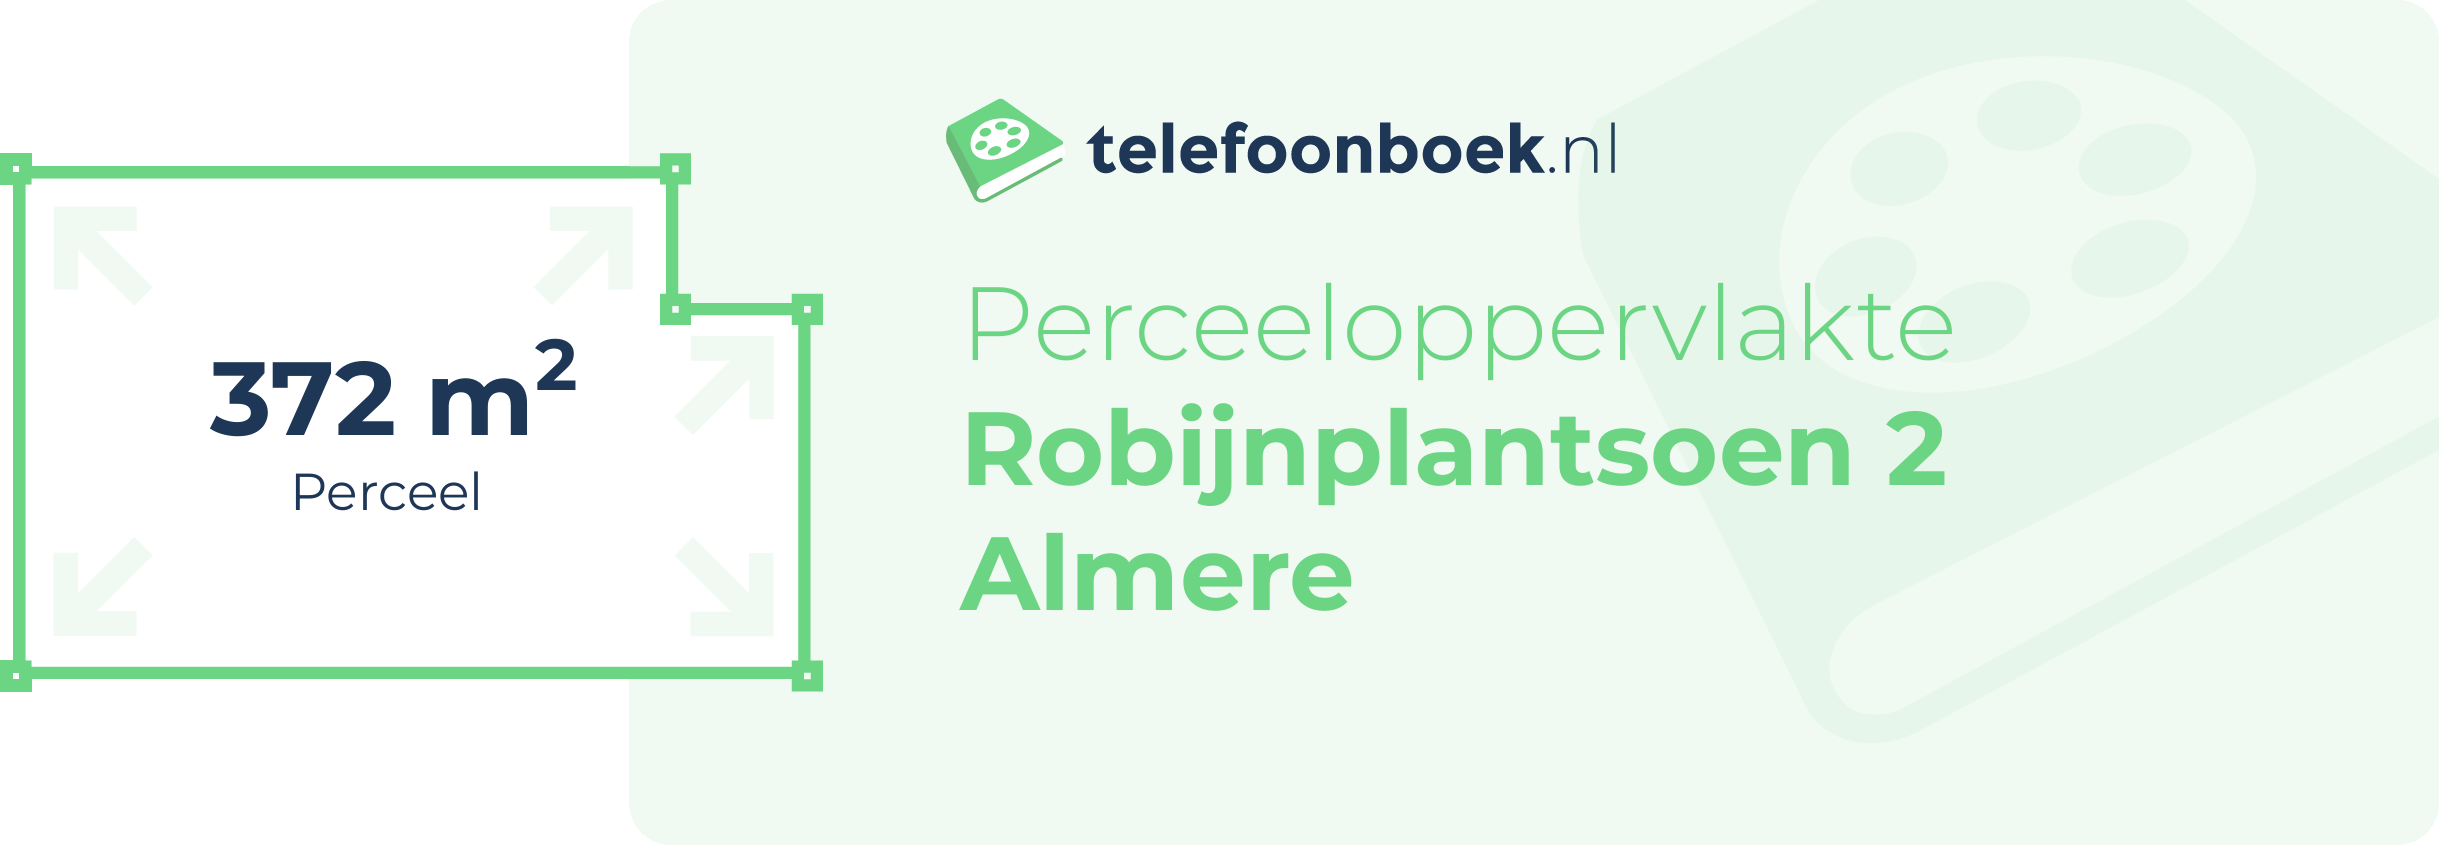 Perceeloppervlakte Robijnplantsoen 2 Almere